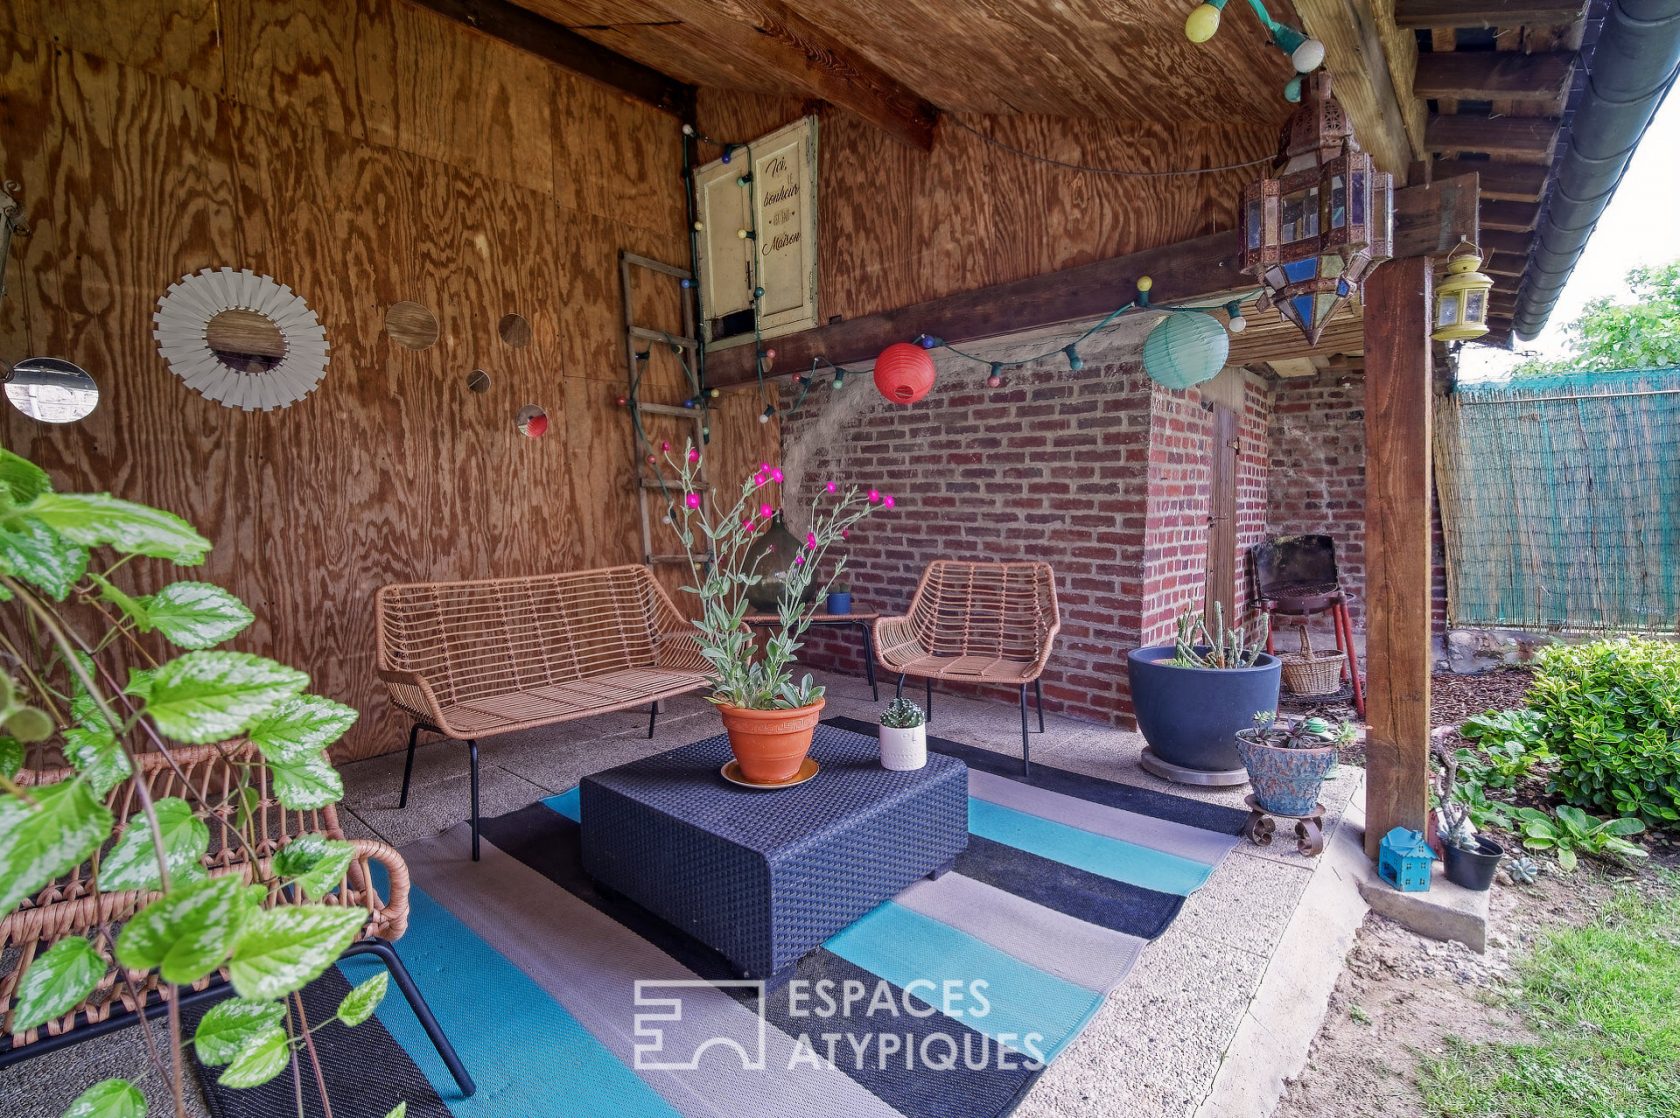 L’Accueillante – Maison bourgeoise rénovée près de Soissons